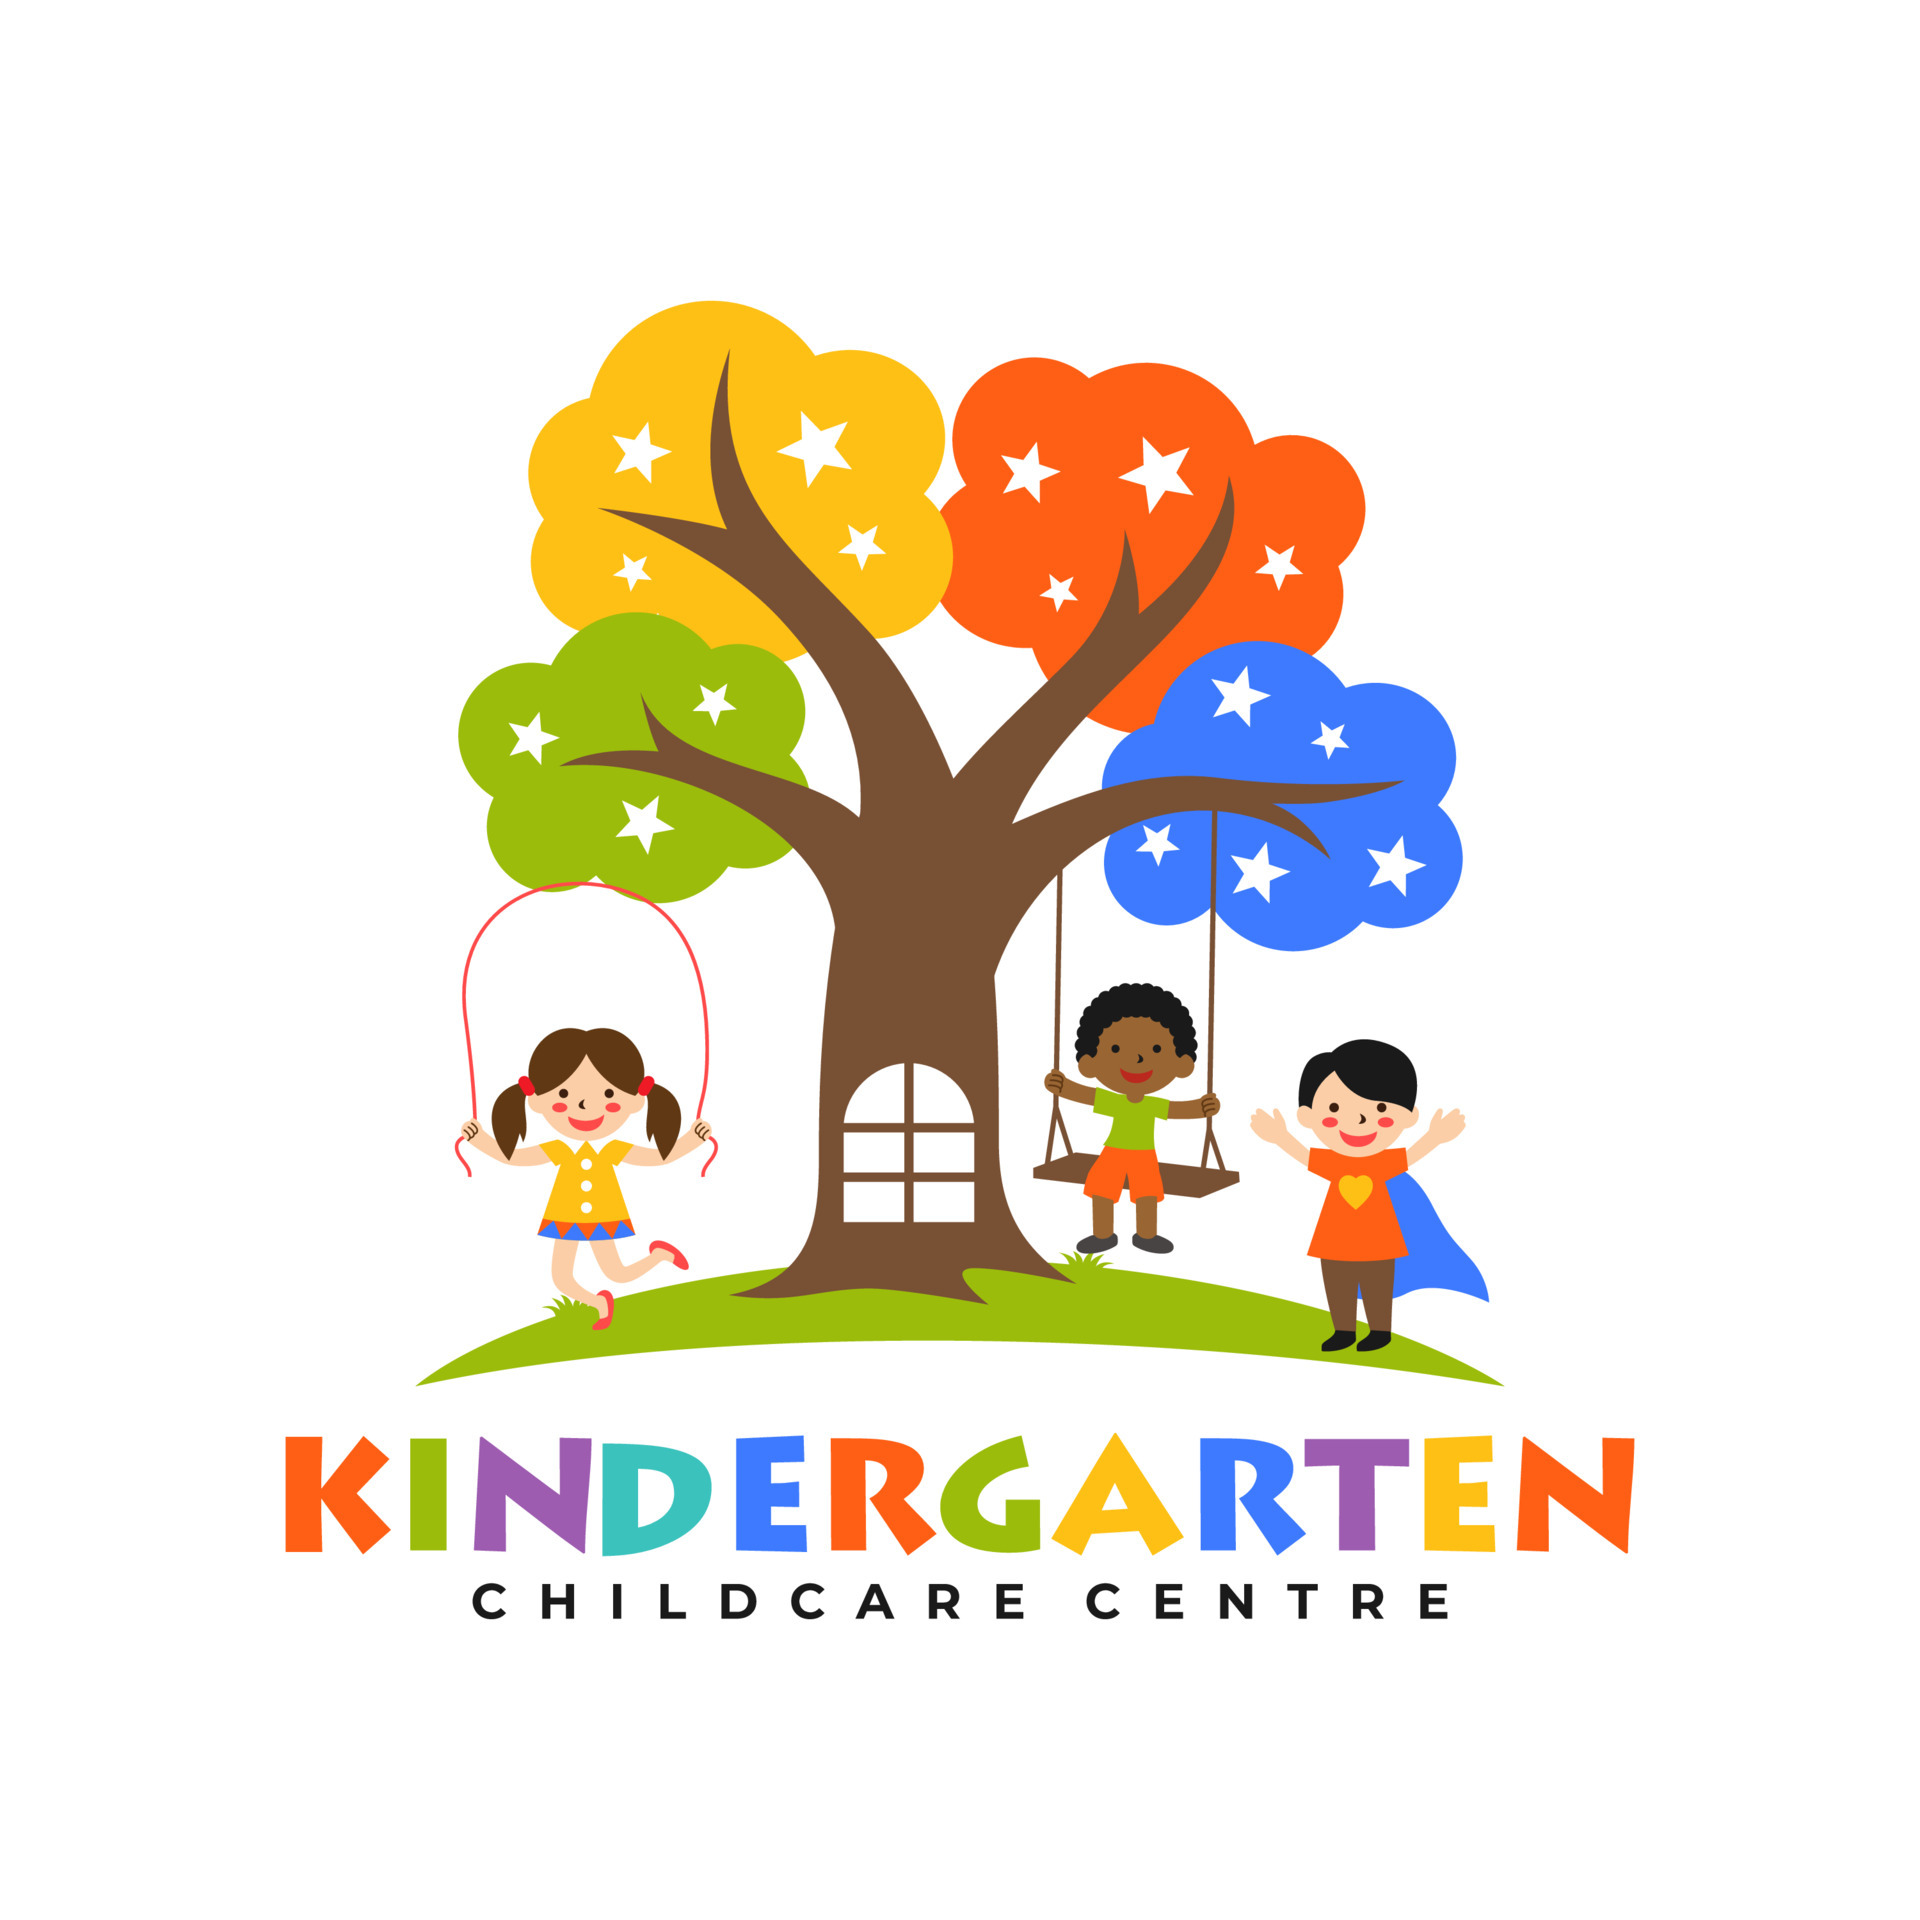 Kids Kindergarten Logo Templates 6470651 Vector Art At Vecteezy